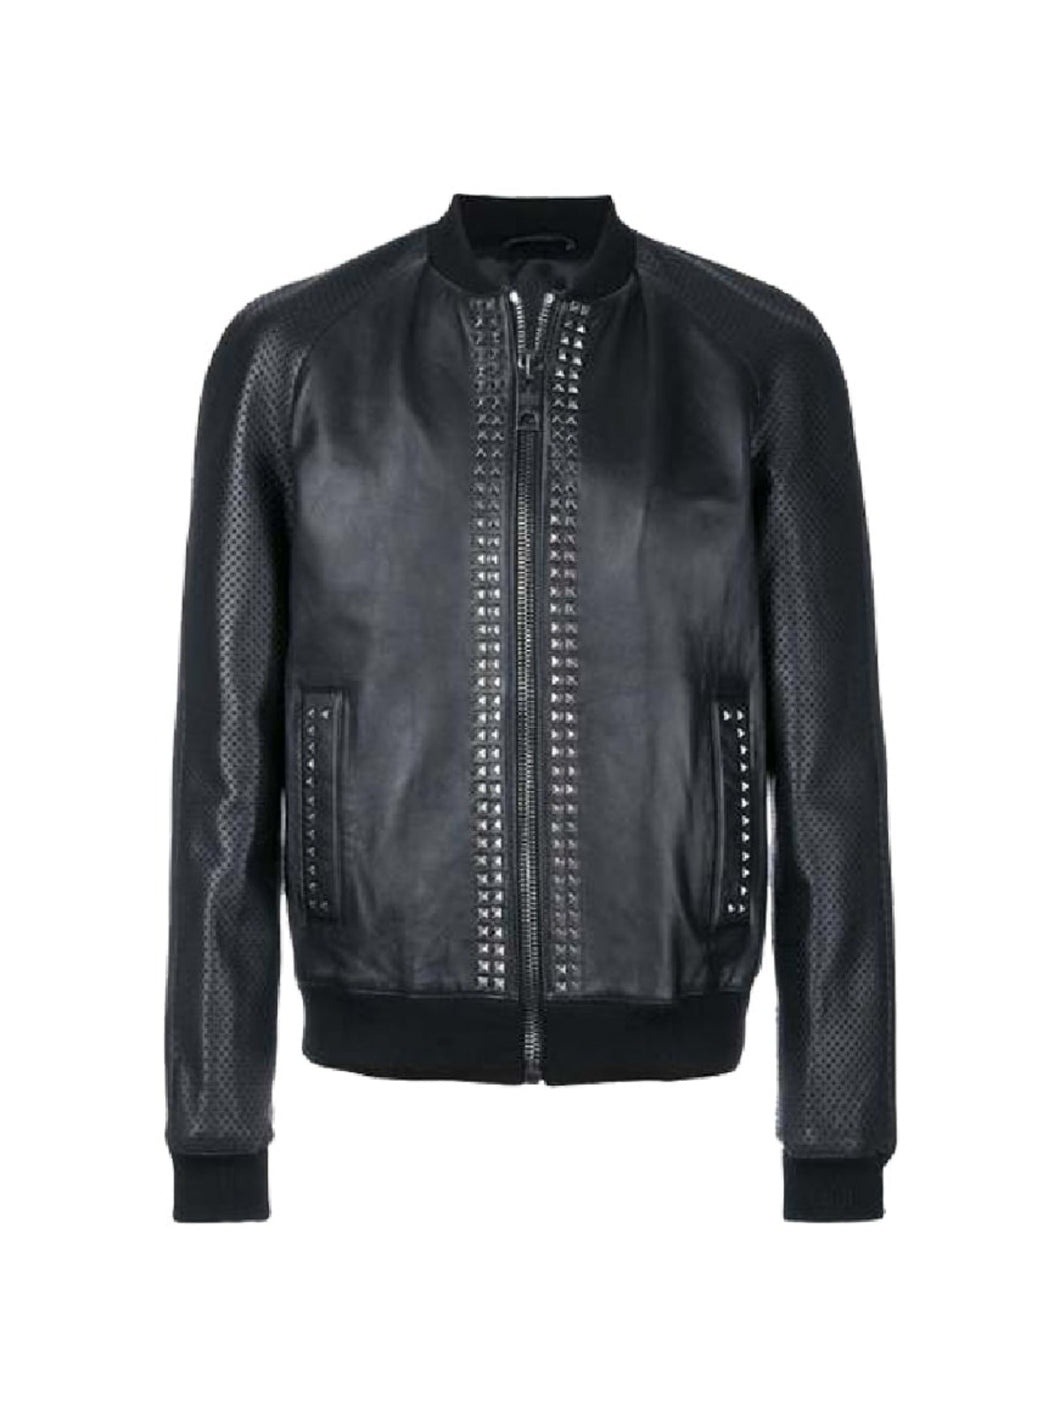 Mens Black Designer Metal Studded Bomber Leather Jacket